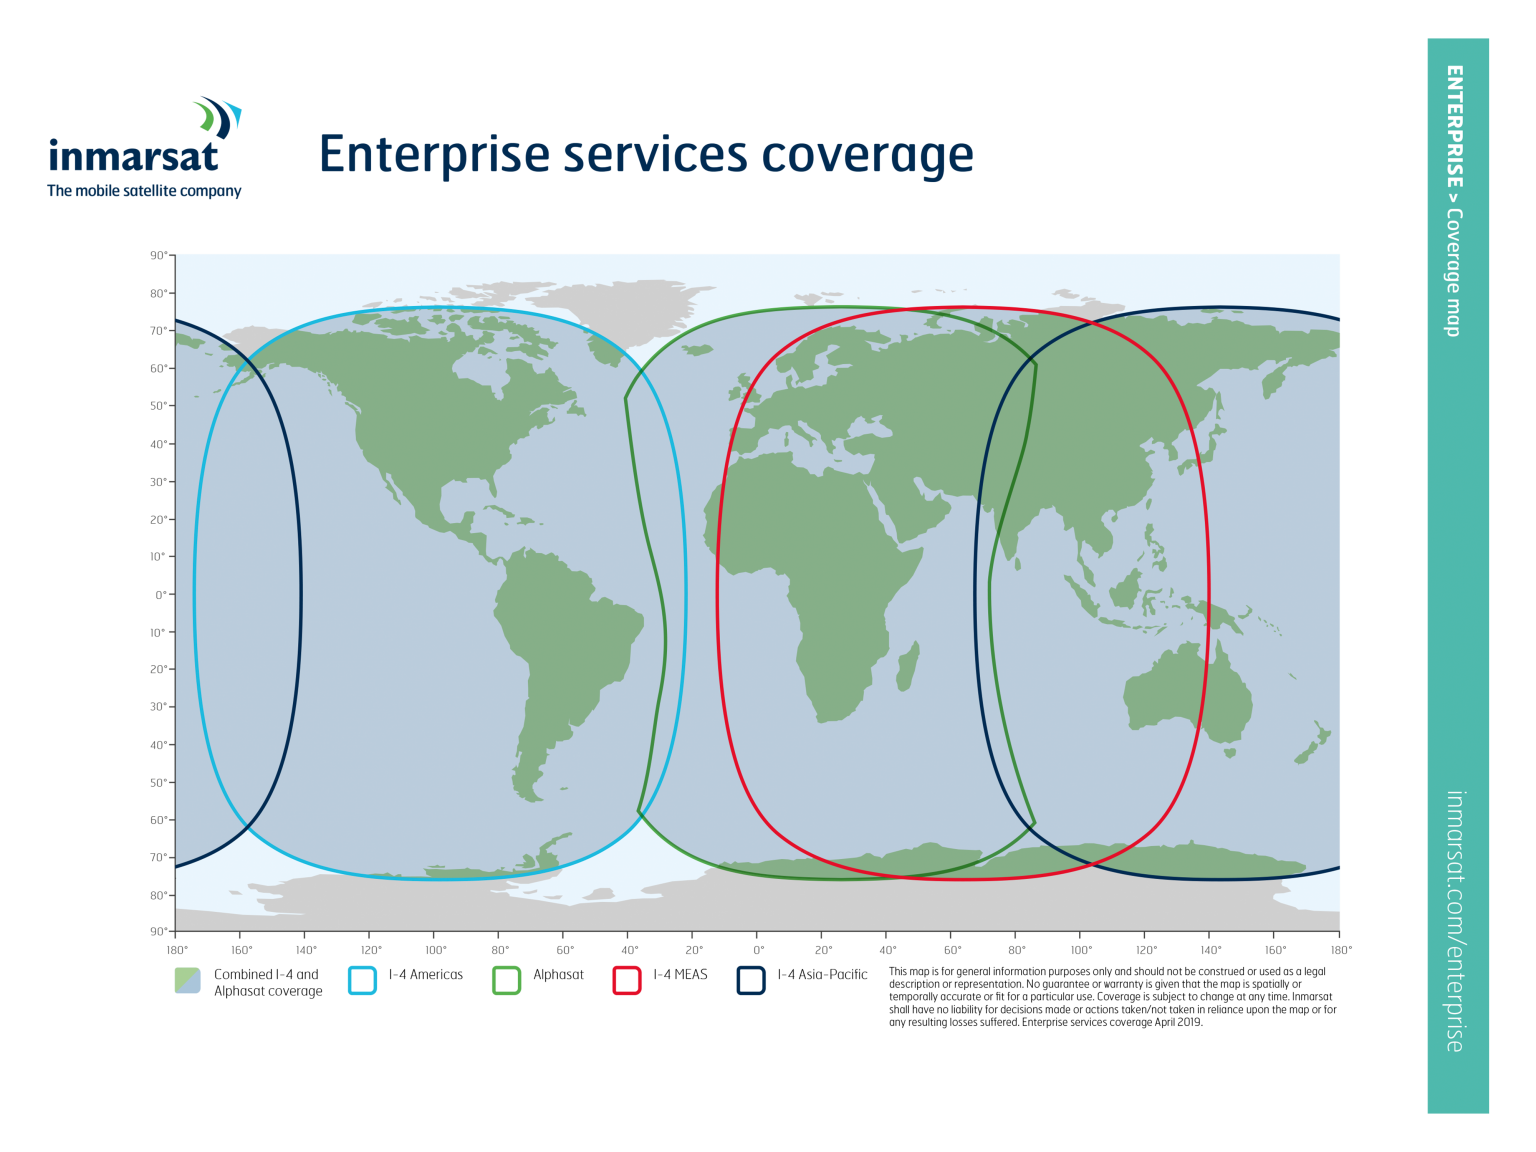 Inmarsat_Enterprise_services_coverage_April_2019_EN_LowRes-1536x1152